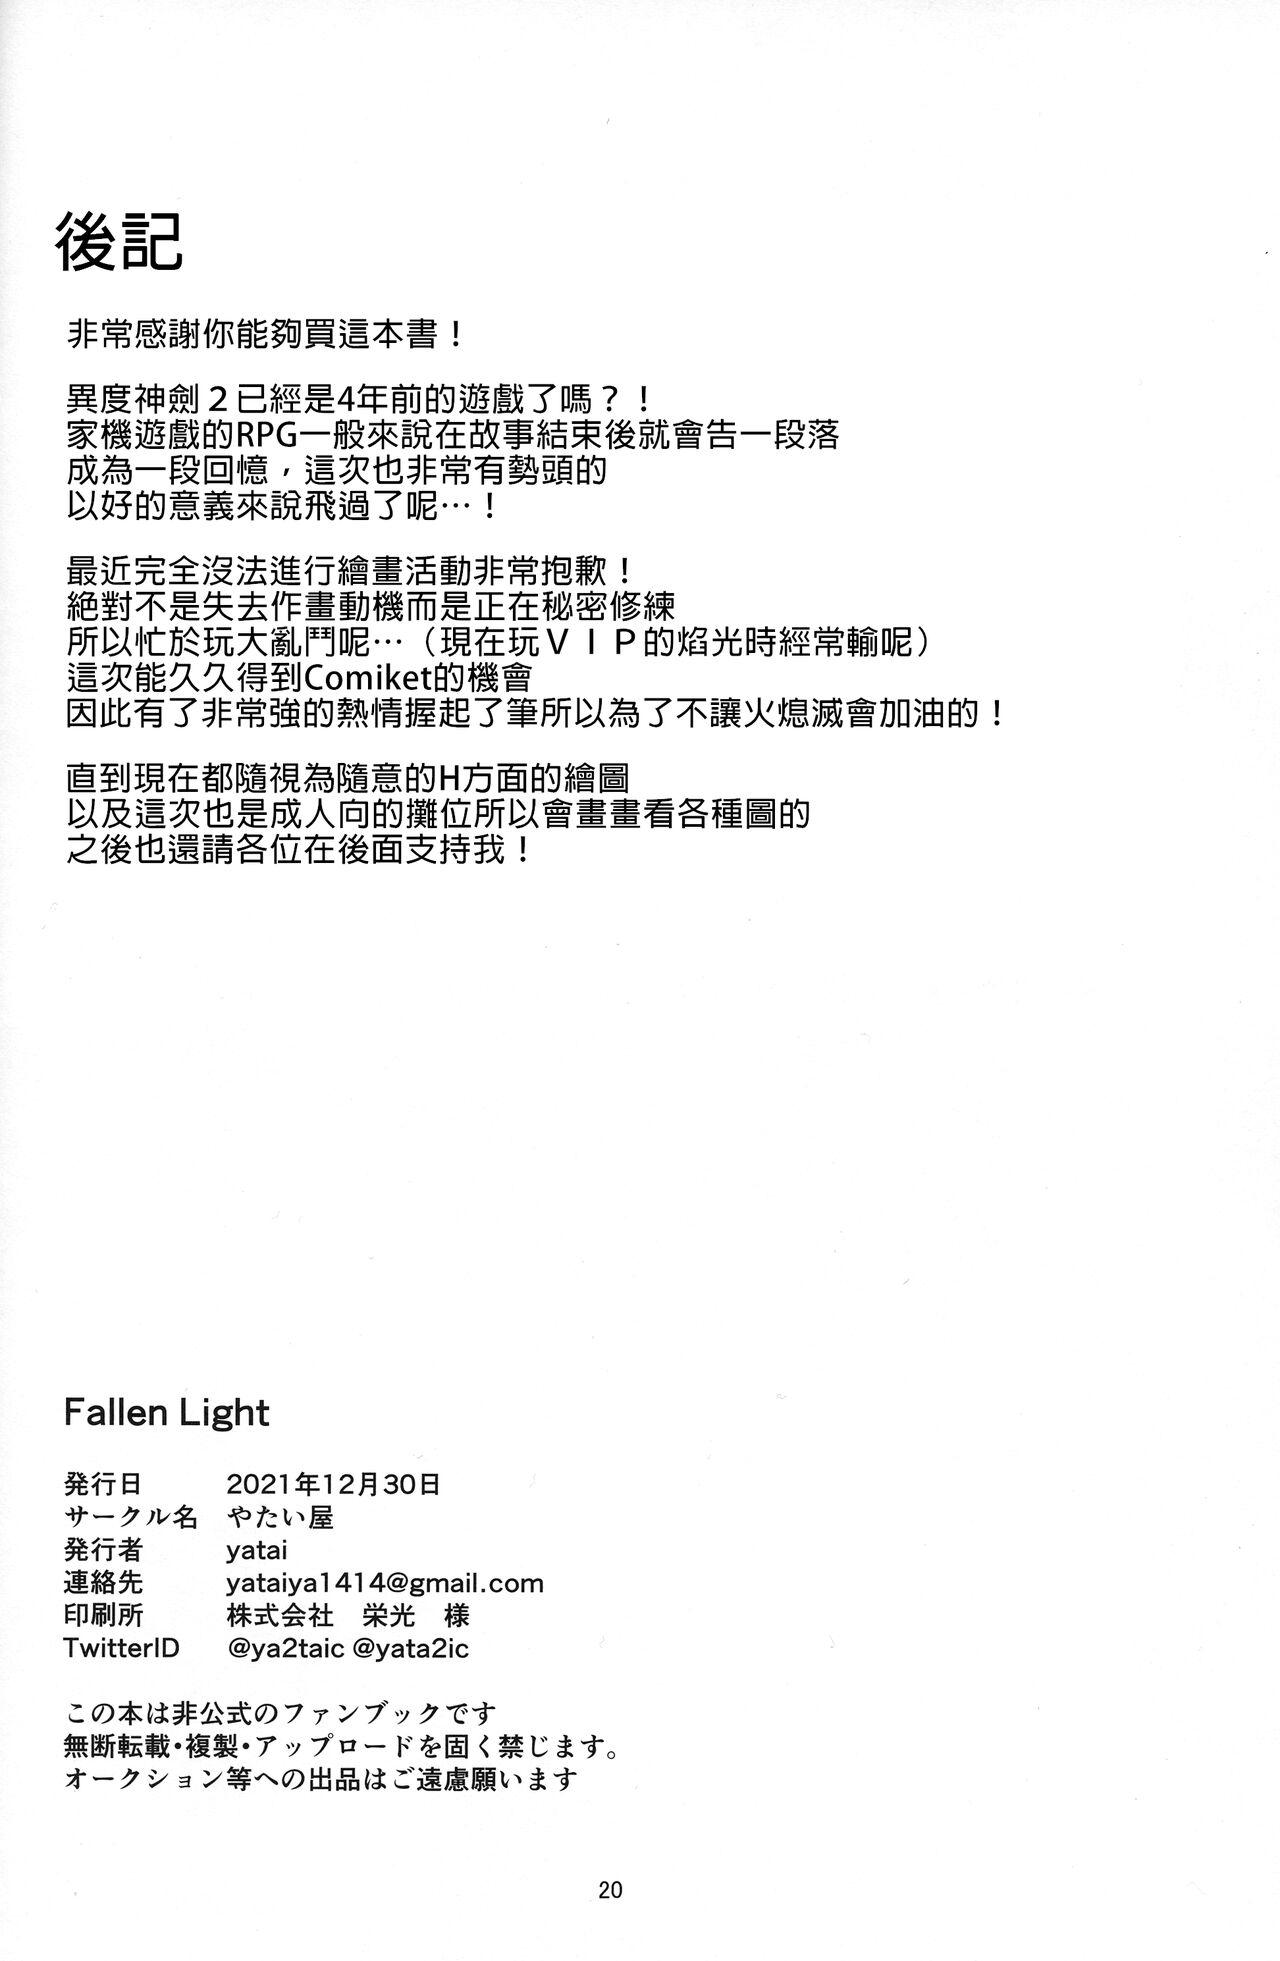 Fallen Light 19